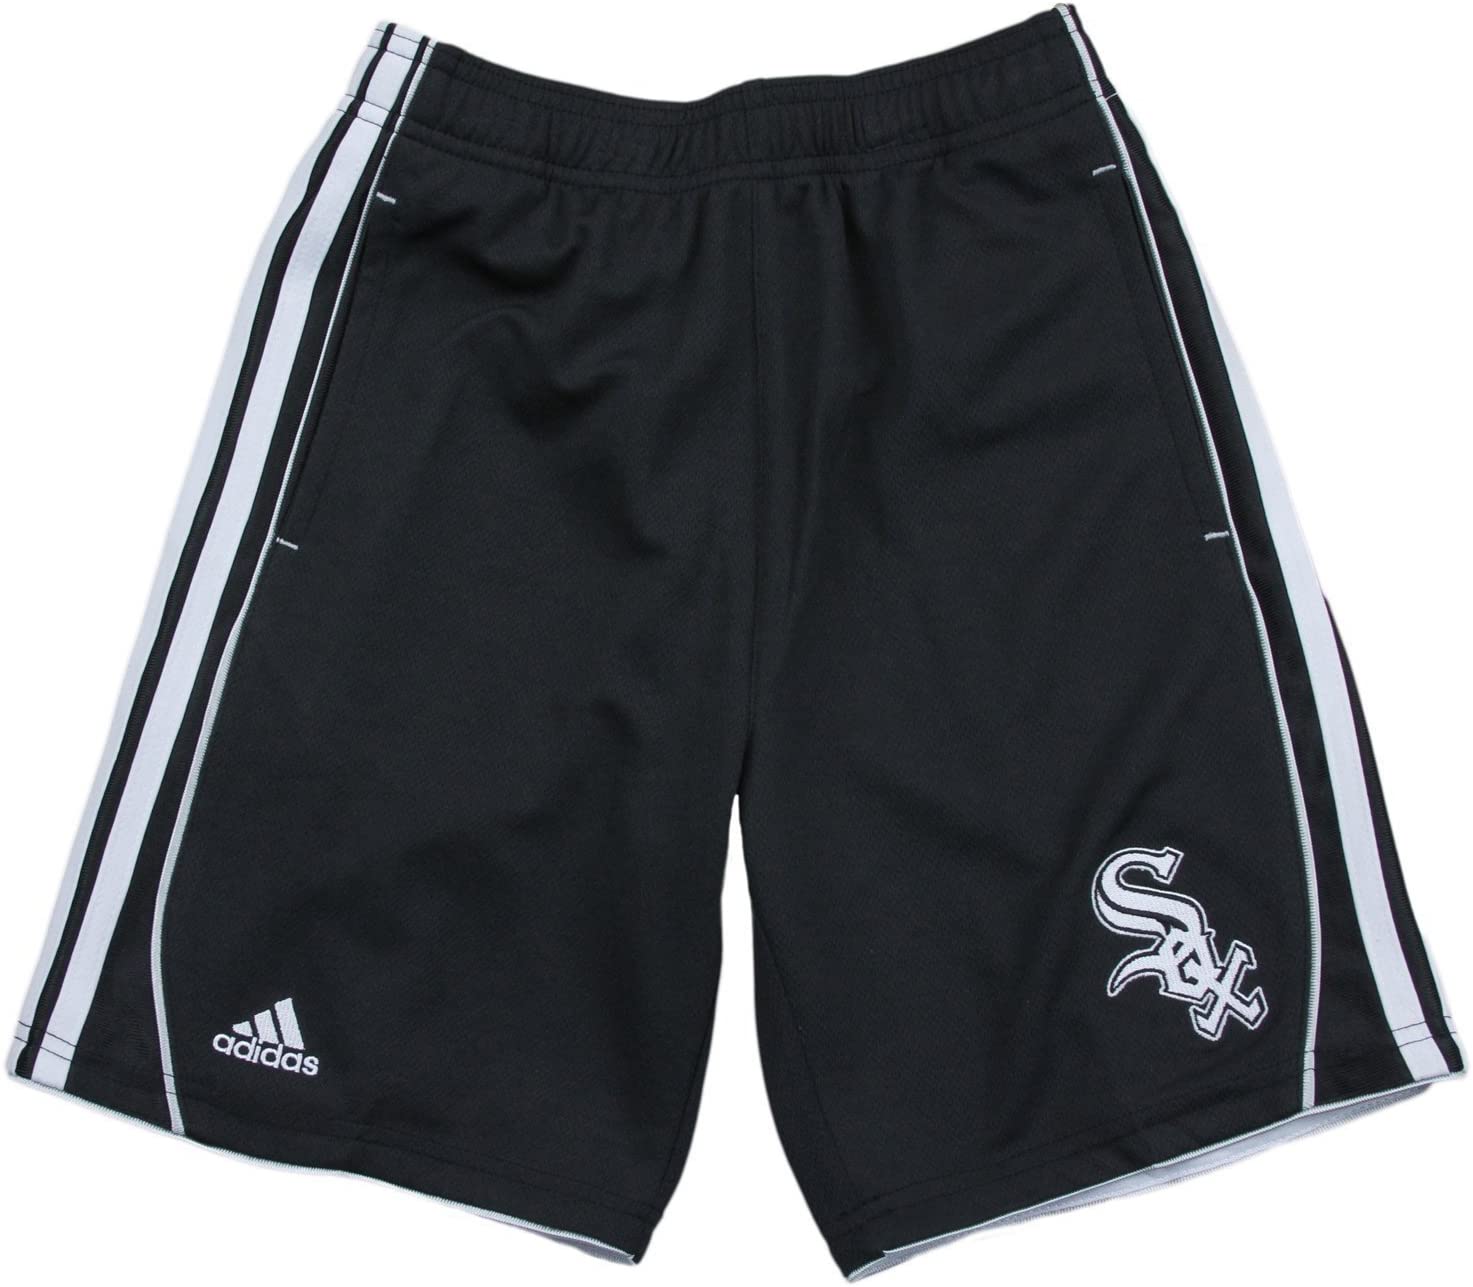 Adidas MLB Youth Boys Chicago White Sox 3-Stripe Shorts, Black | eBay